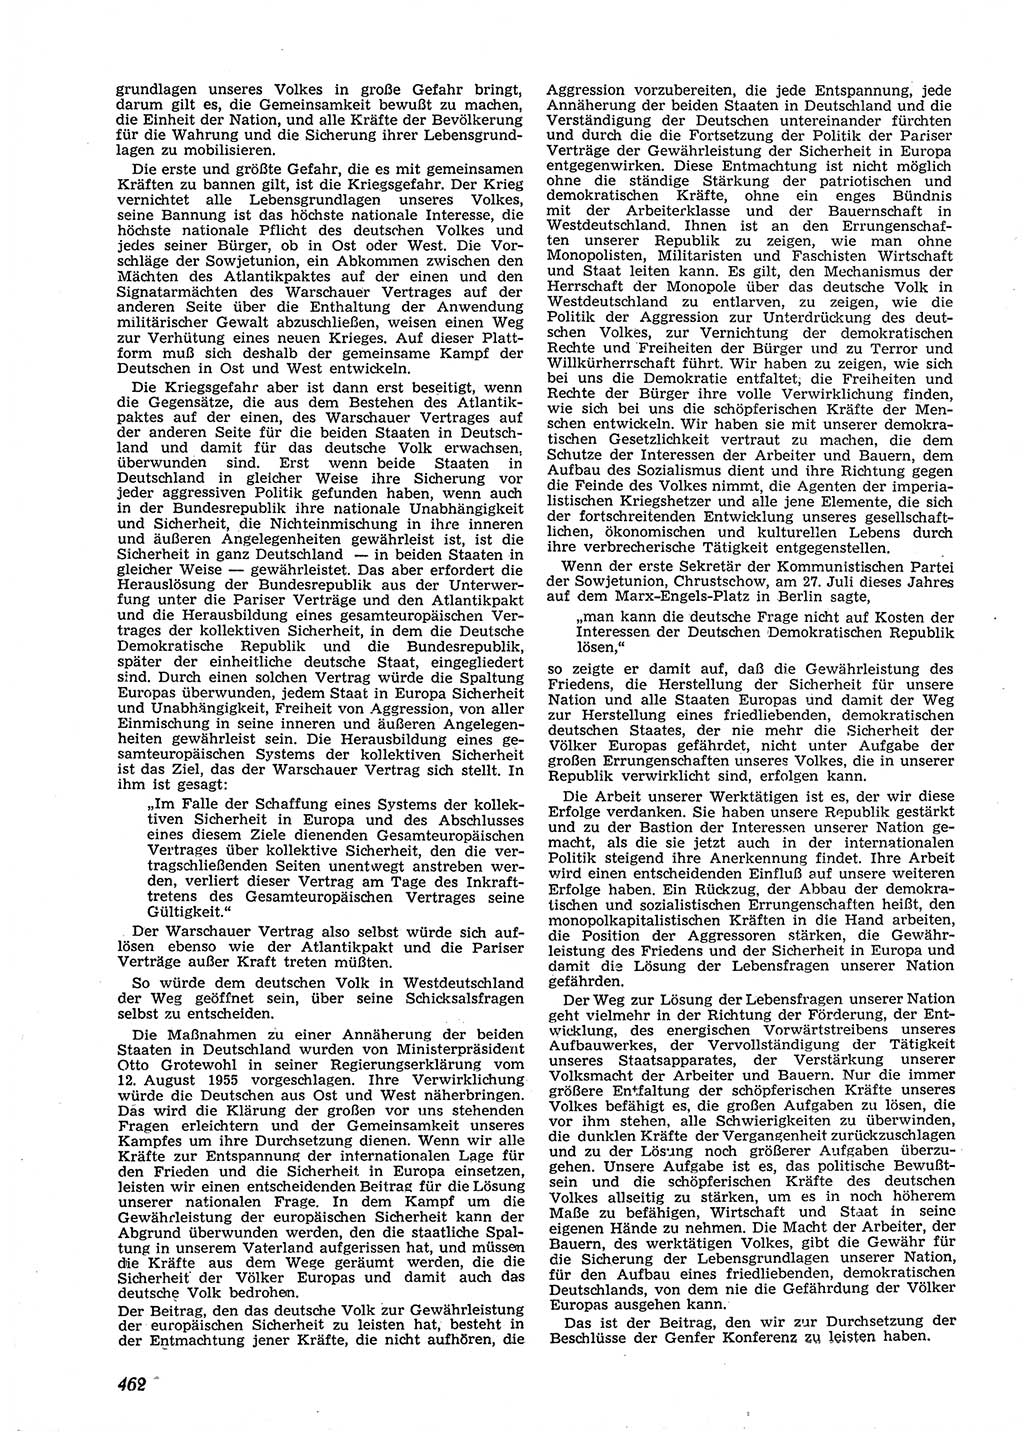 Neue Justiz (NJ), Zeitschrift für Recht und Rechtswissenschaft [Deutsche Demokratische Republik (DDR)], 9. Jahrgang 1955, Seite 462 (NJ DDR 1955, S. 462)